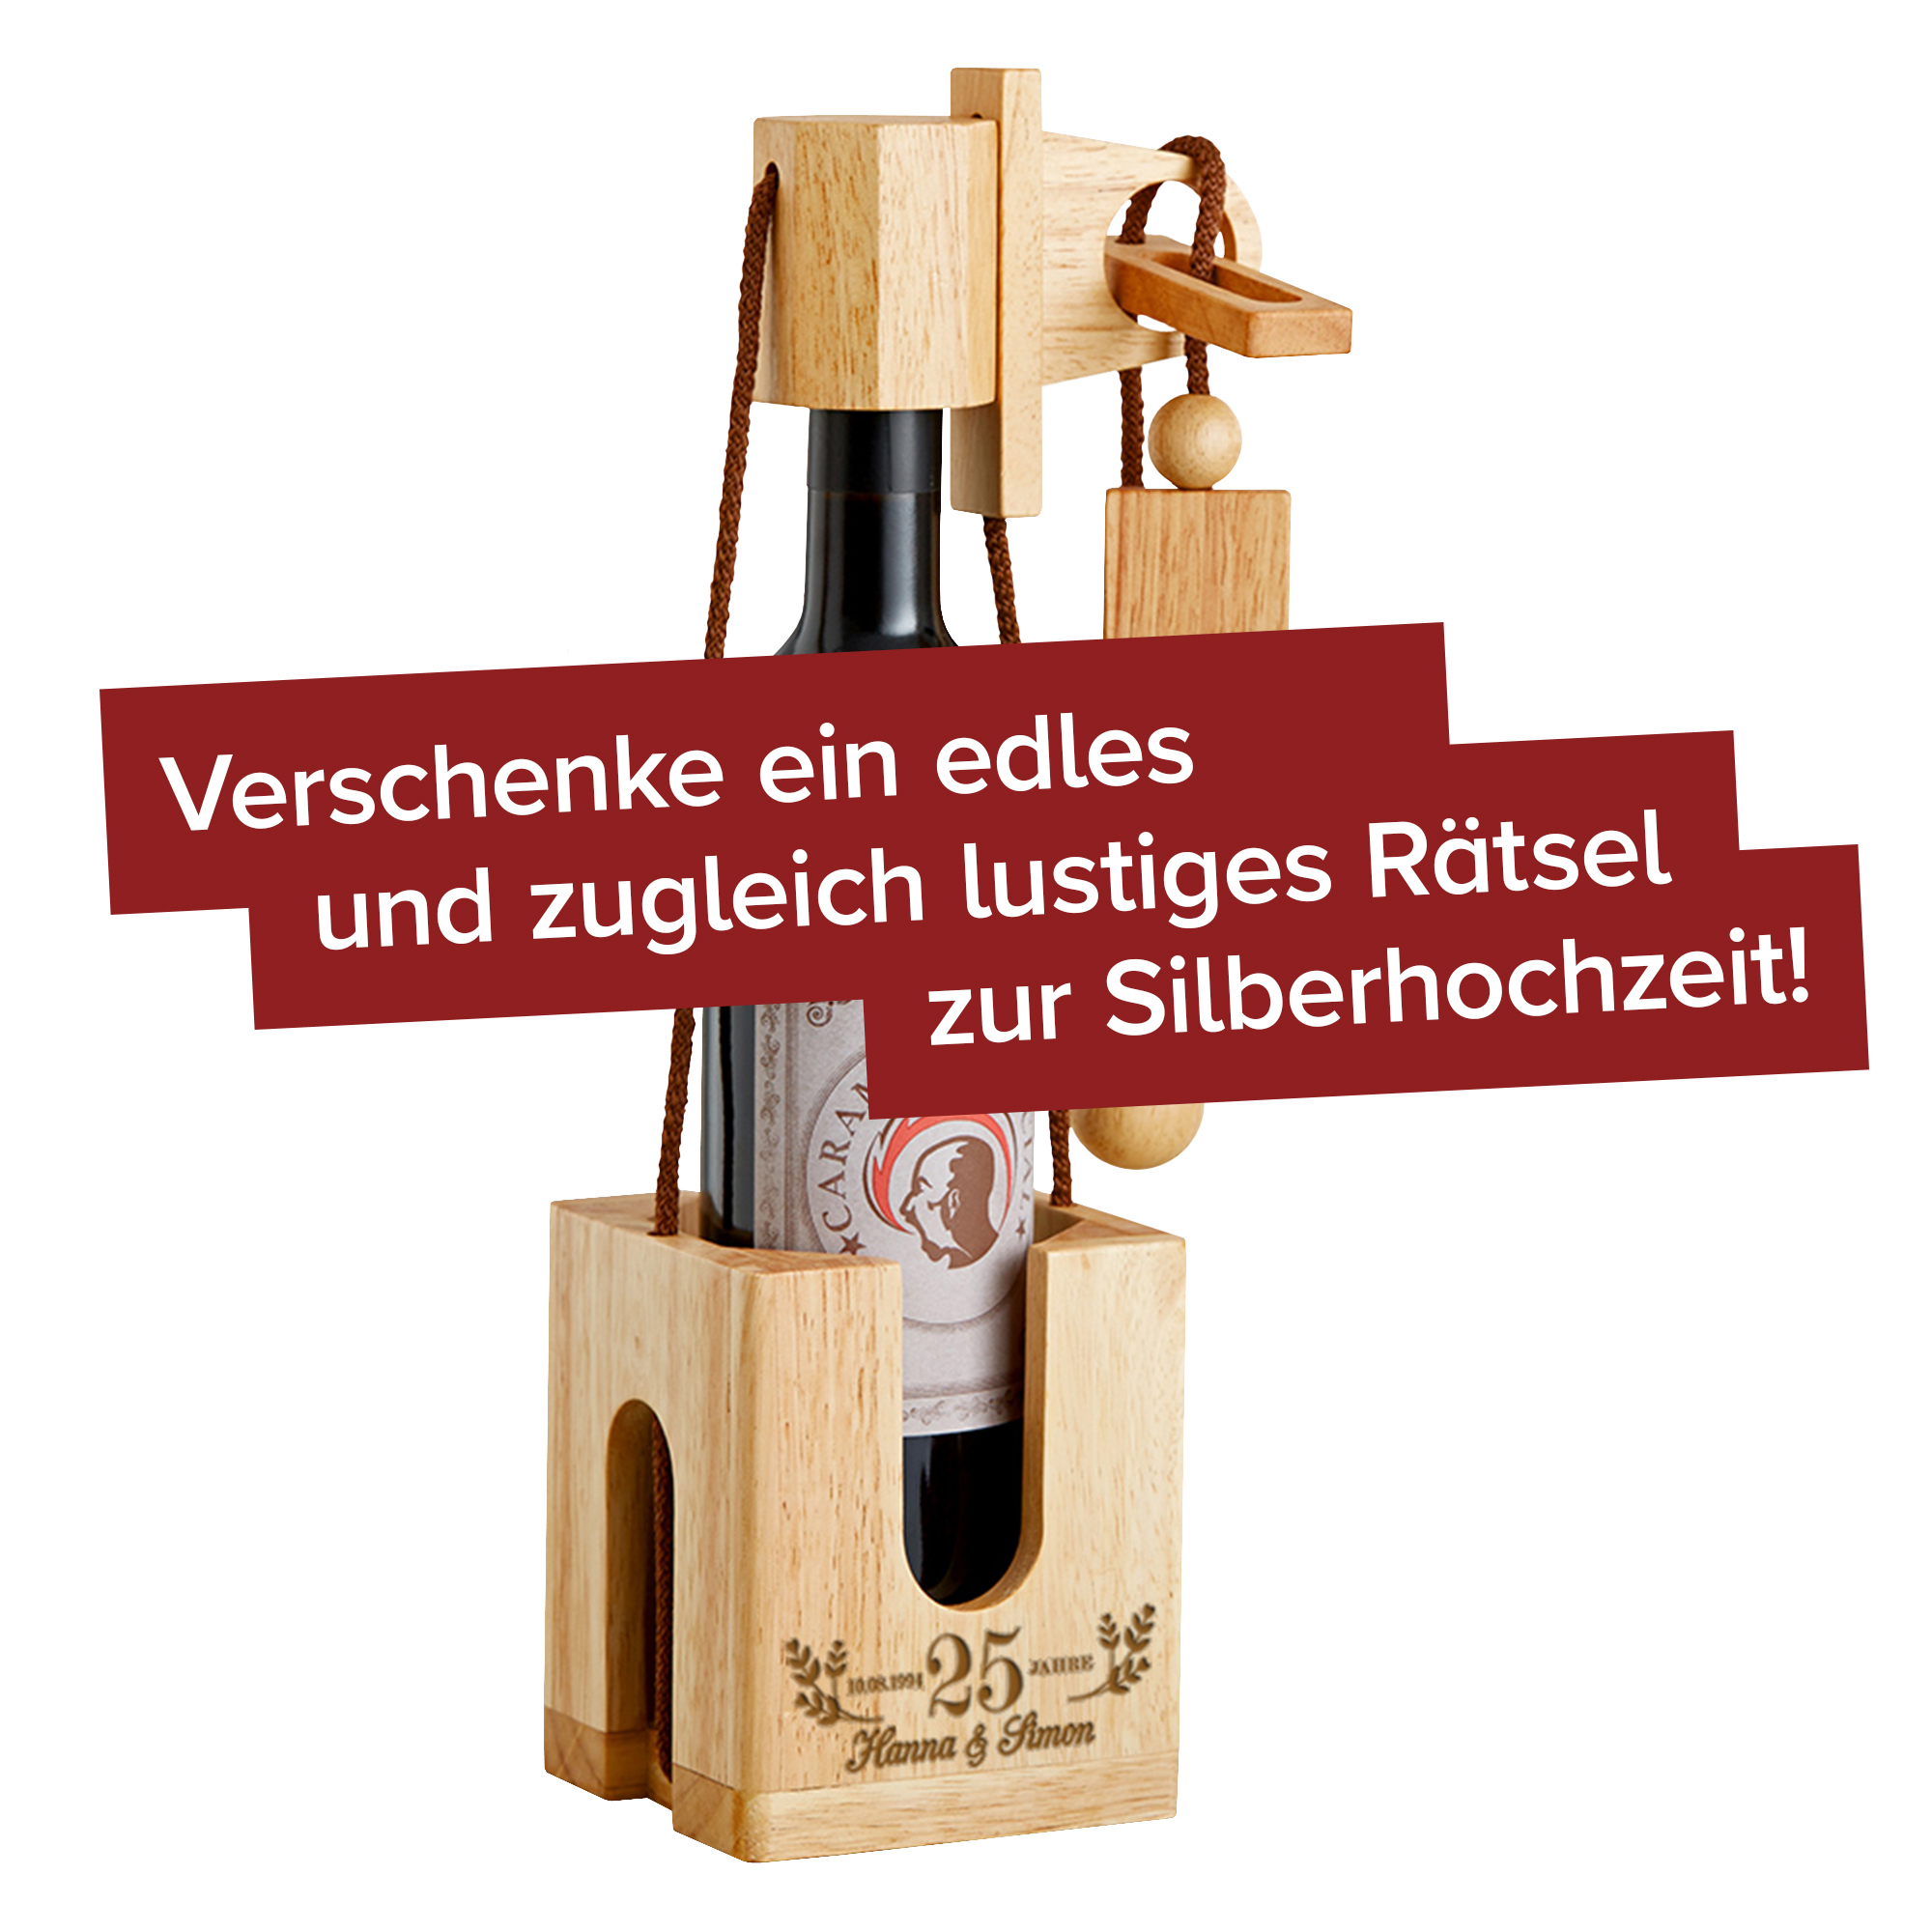 Graviertes Edelholz Flaschenpuzzle Hell zur Silberhochzeit 216-85-MZ - 2